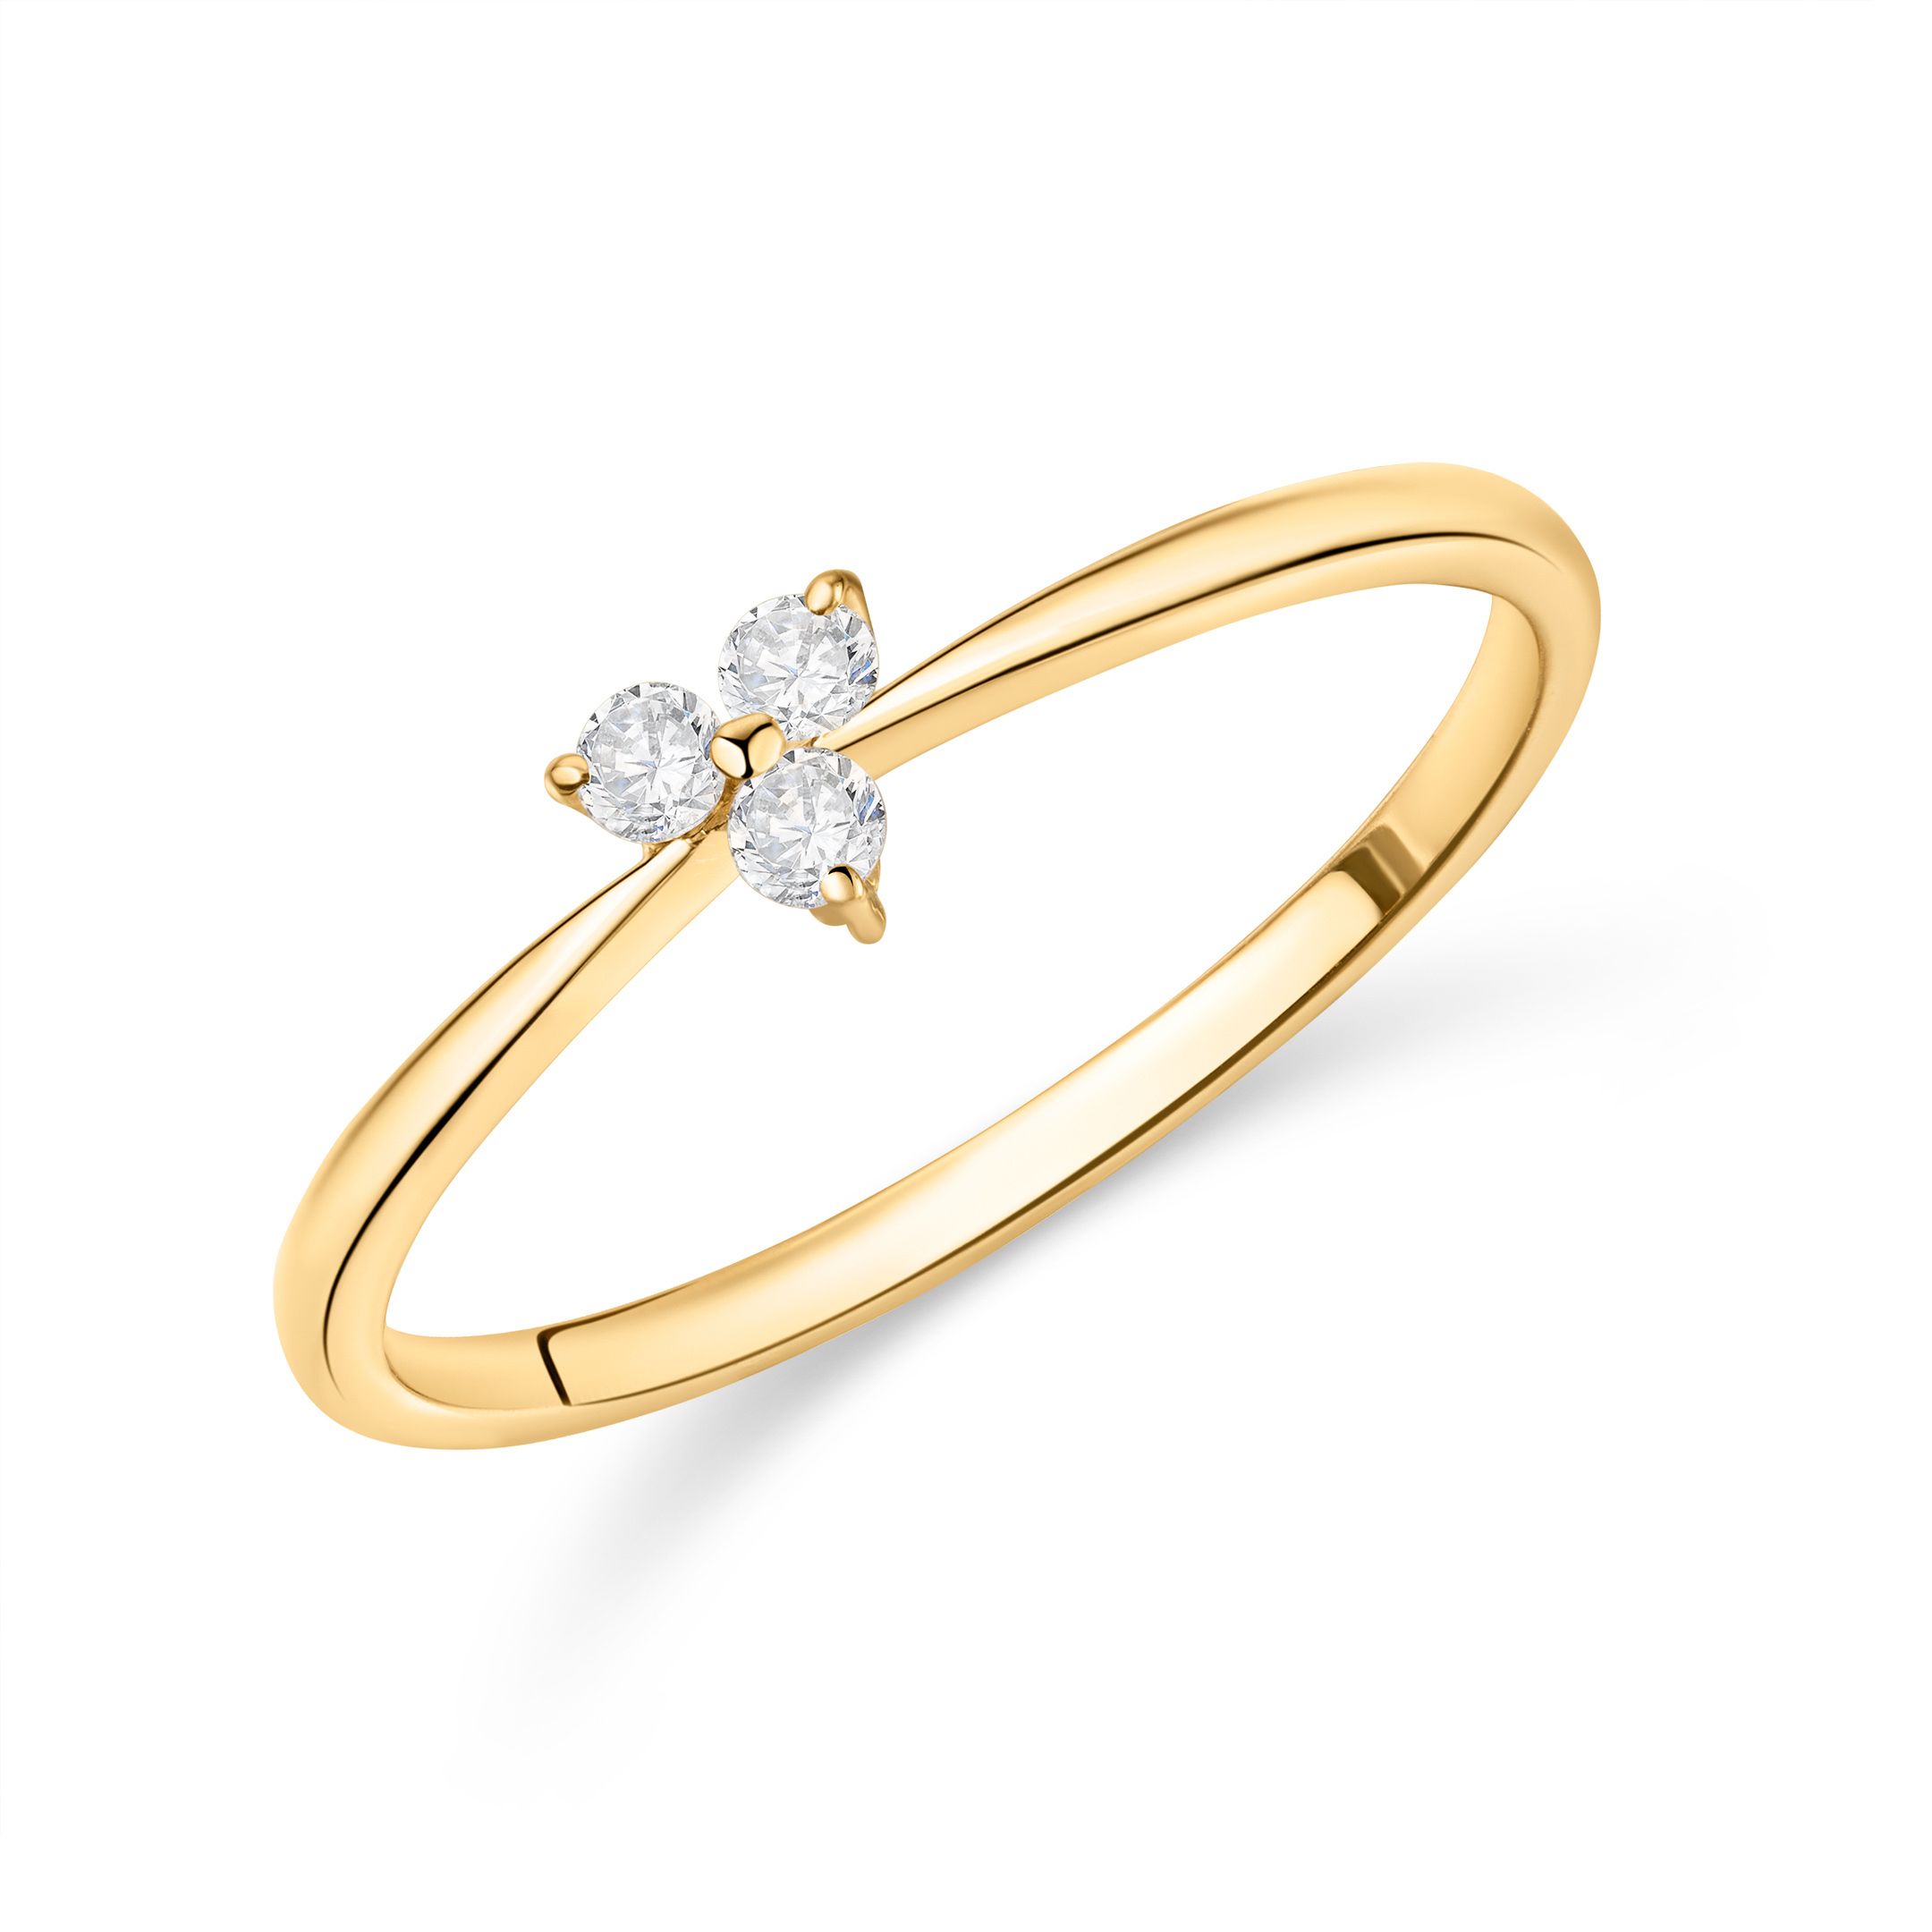 Senco Gold & Diamonds, a 80 year... - Senco Gold & Diamonds | Facebook